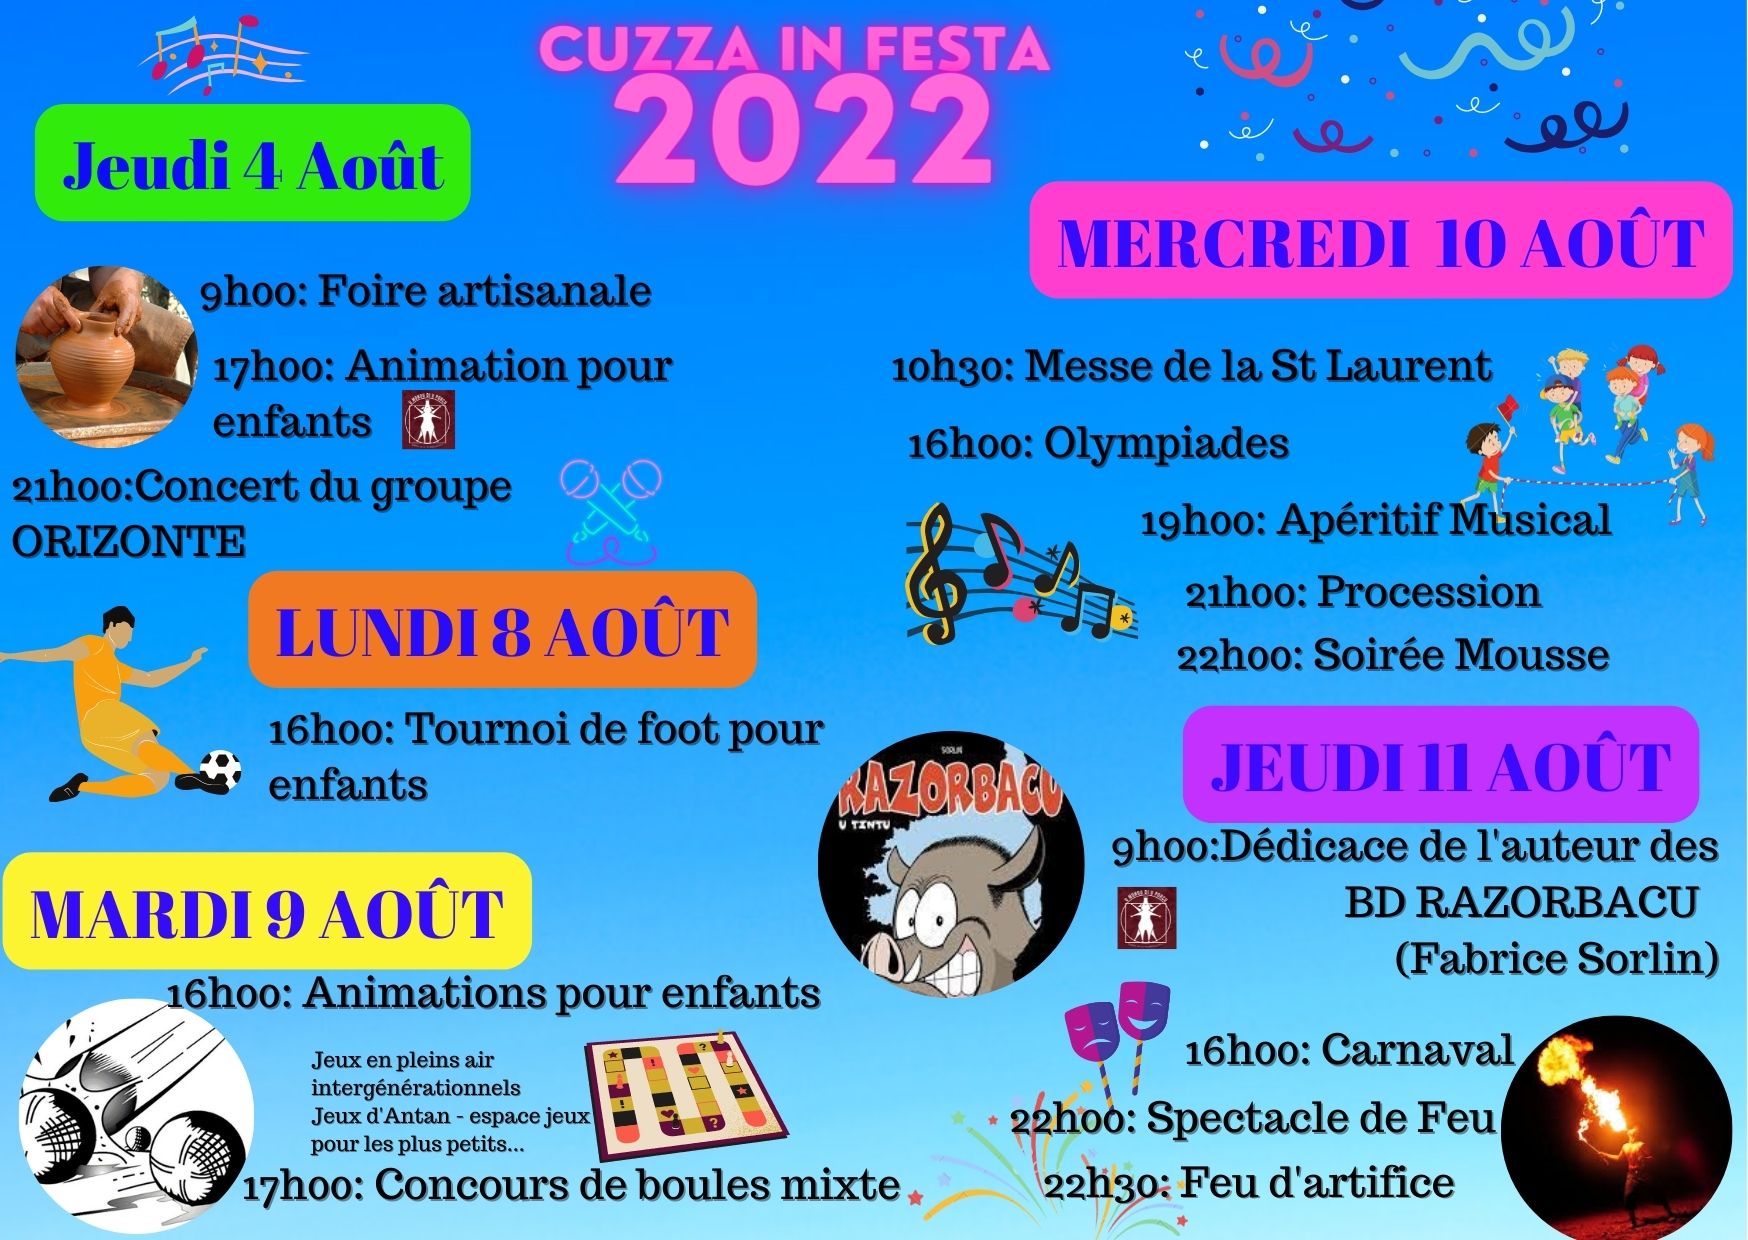 Cuzzà in Festa 2022